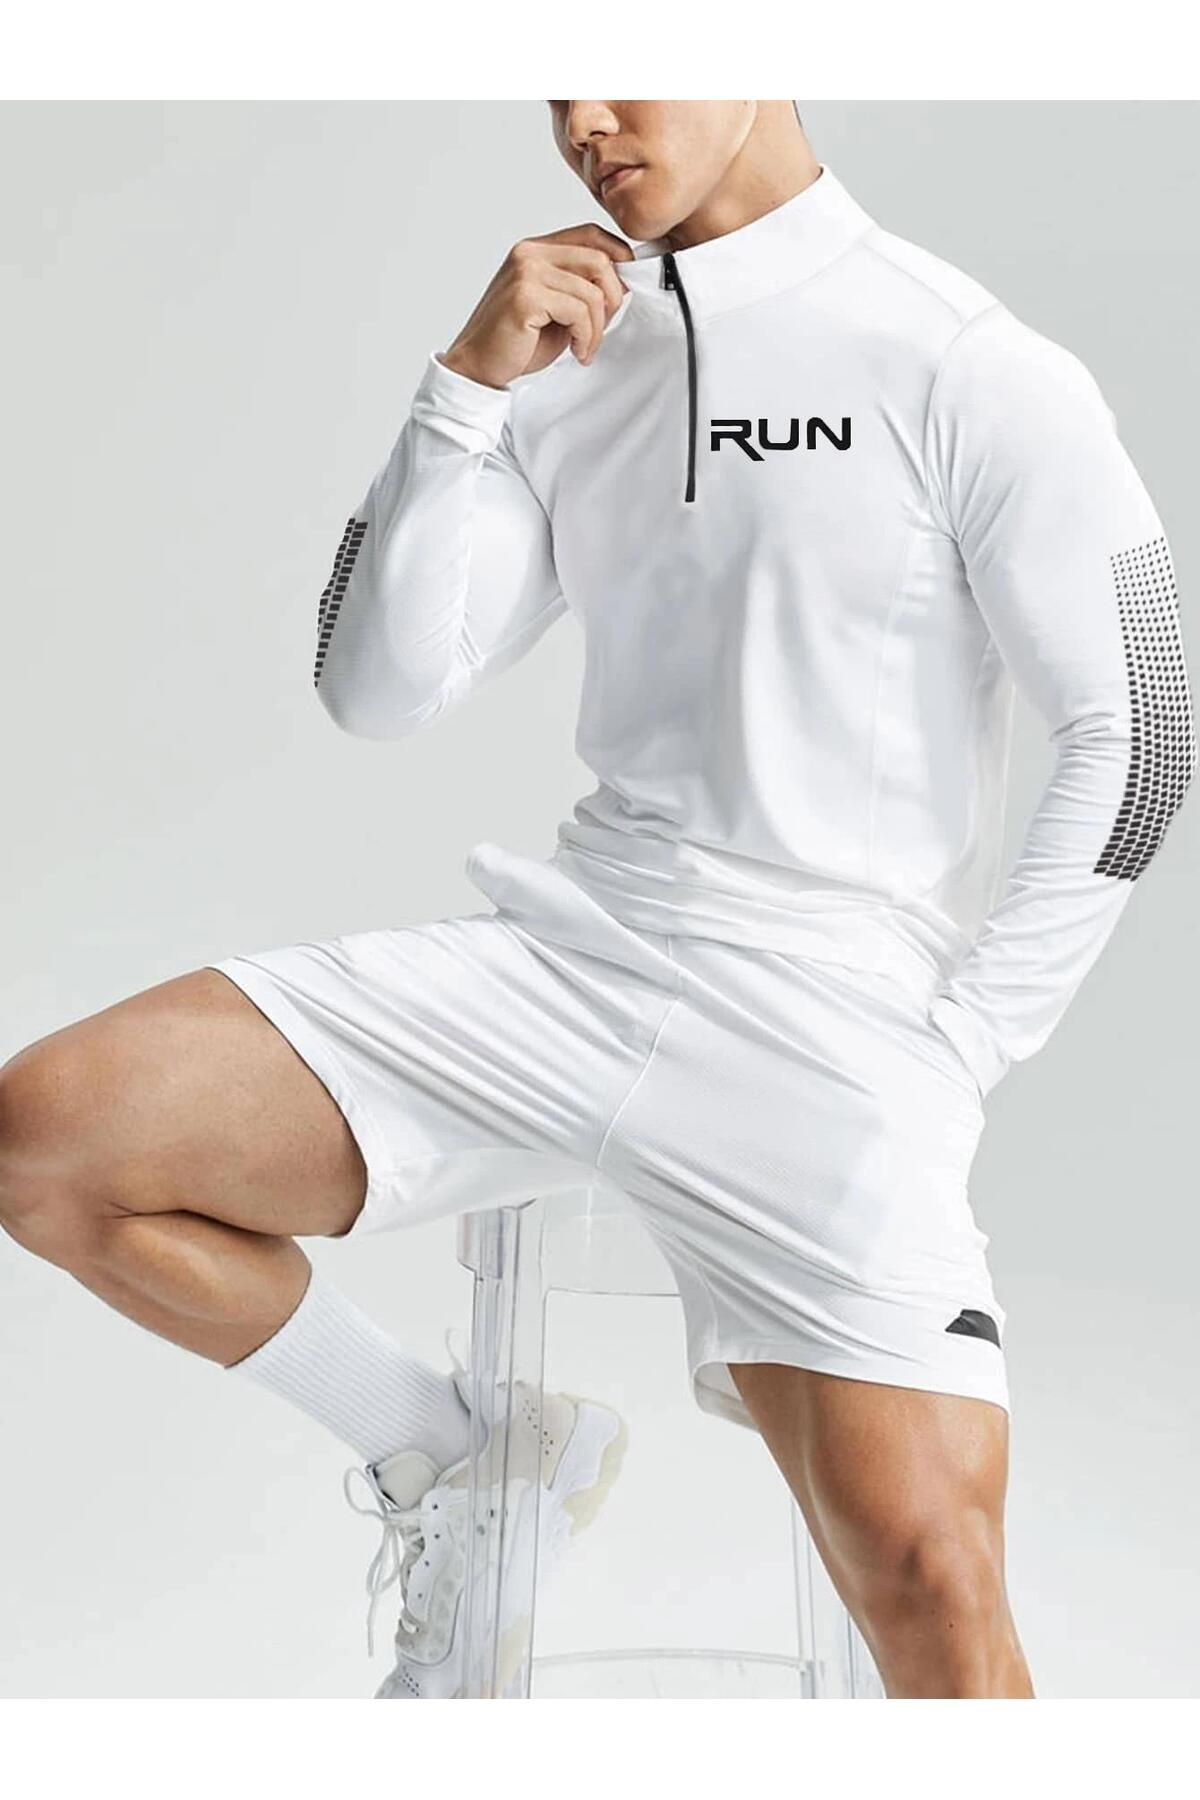 Ghassy Co Ghassy Co. Erkek Running Hızlı Kuruma Nem Emici Teknik Performan Uzun Kollu T-shirt